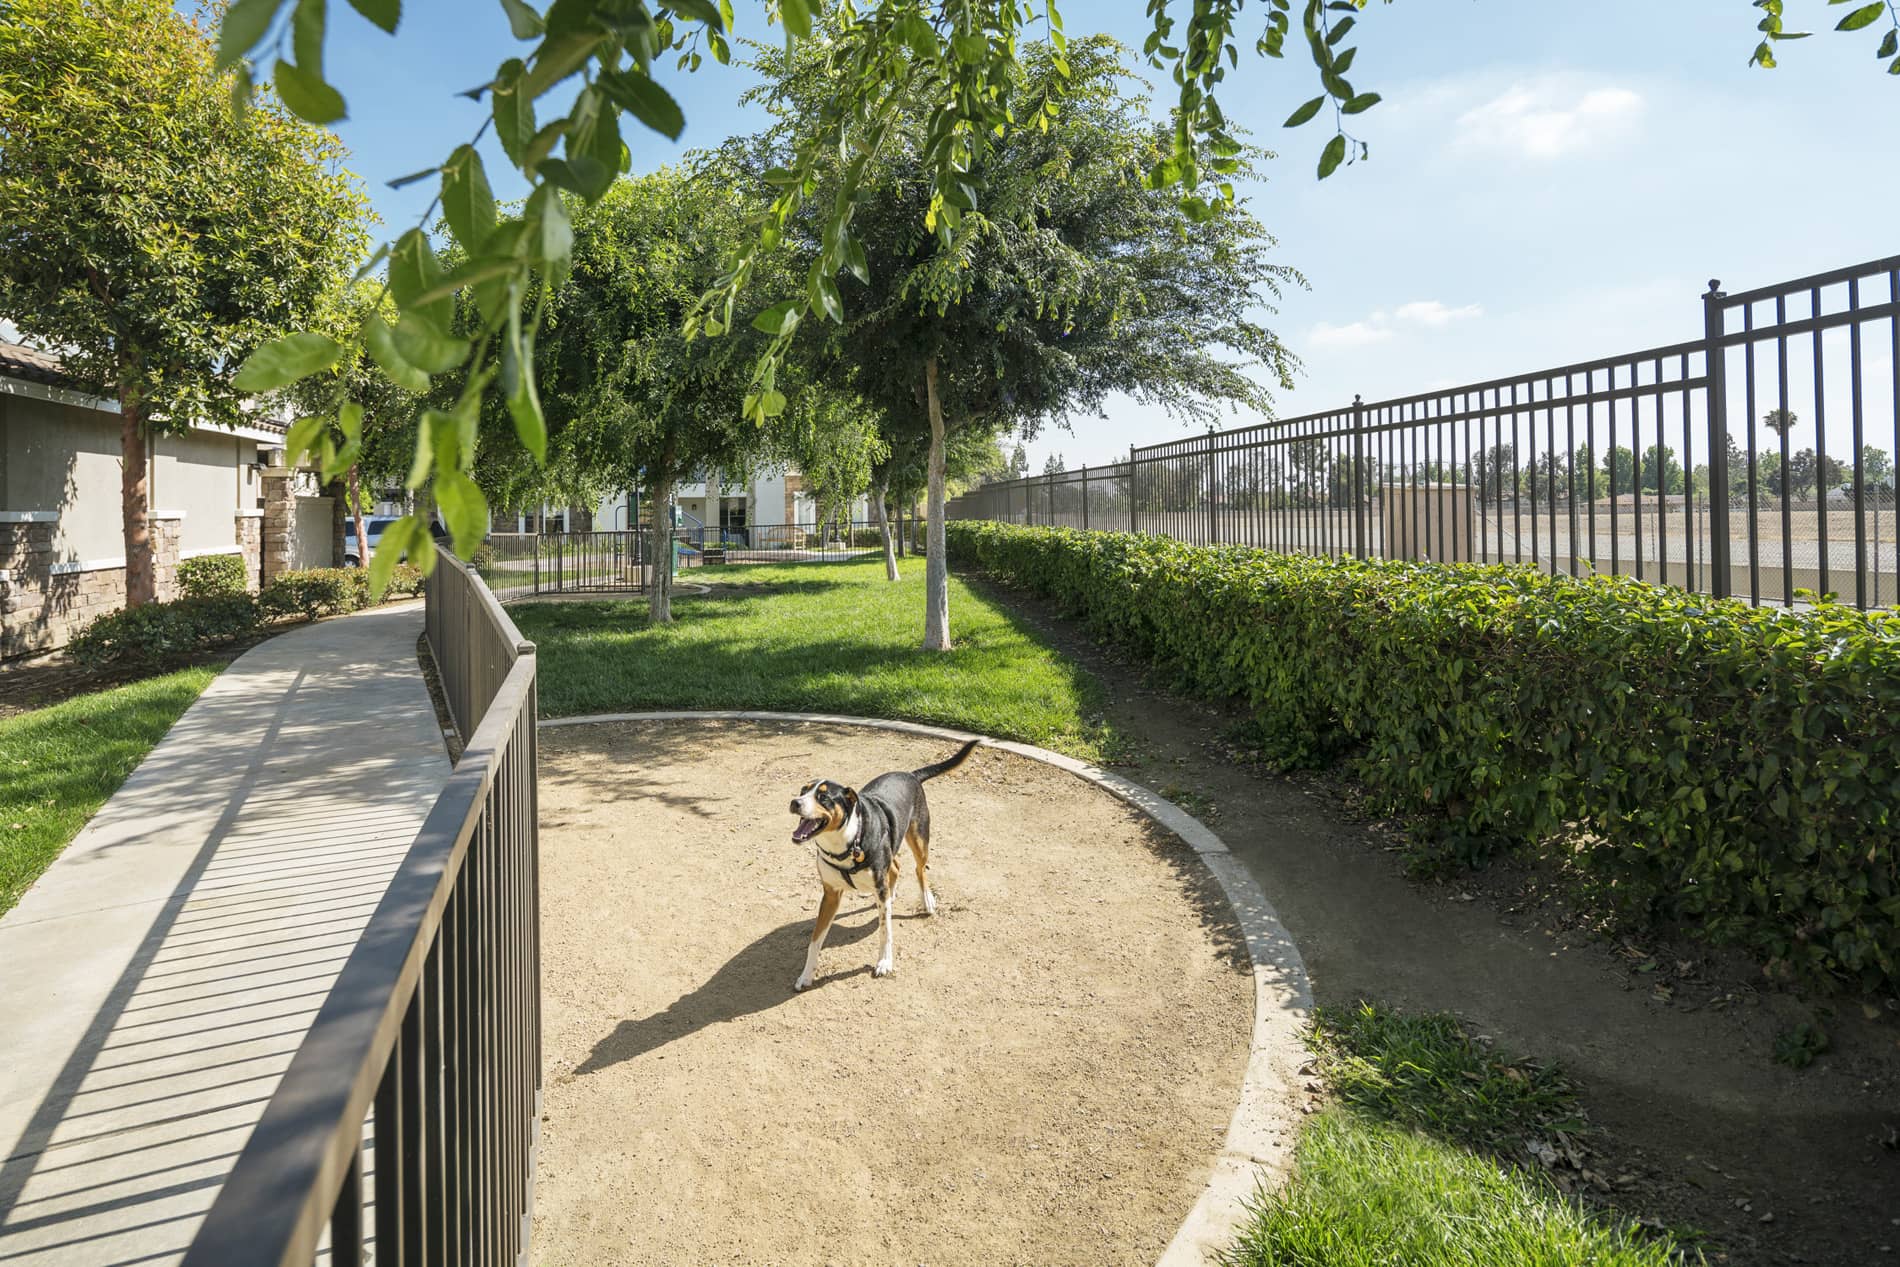 Verano at Rancho Cucamonga Town Dog Park